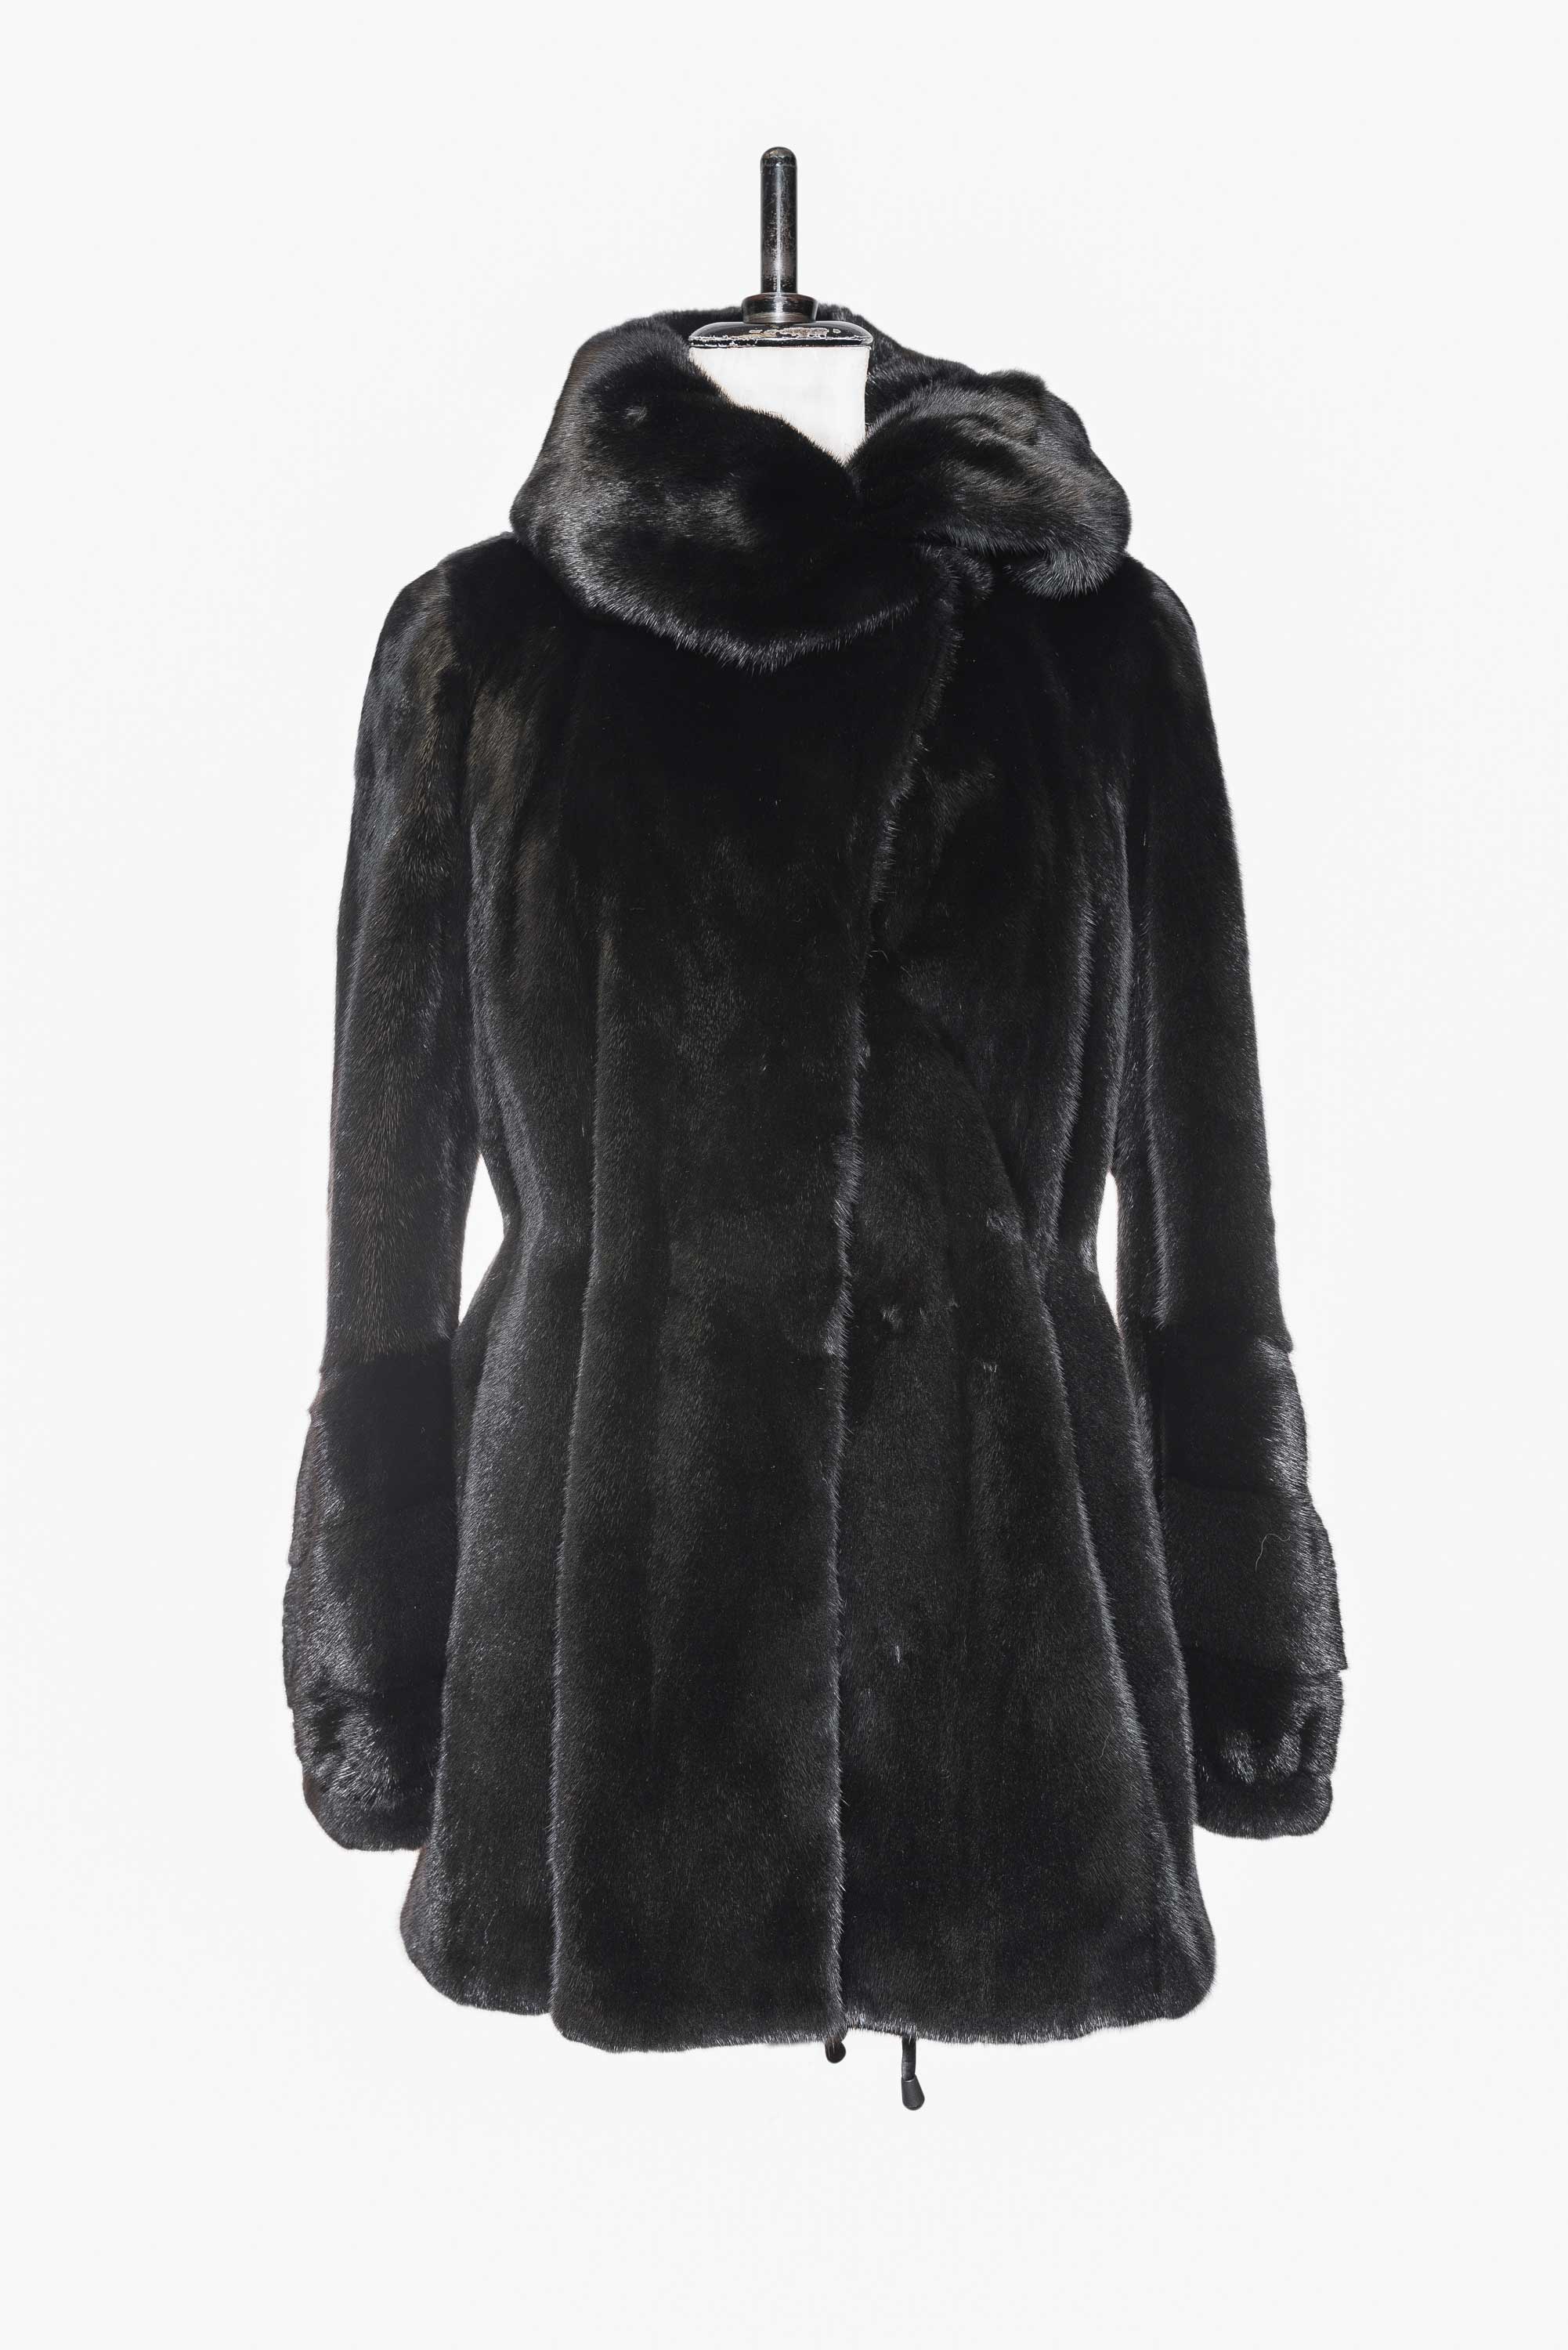 sheared fur coat